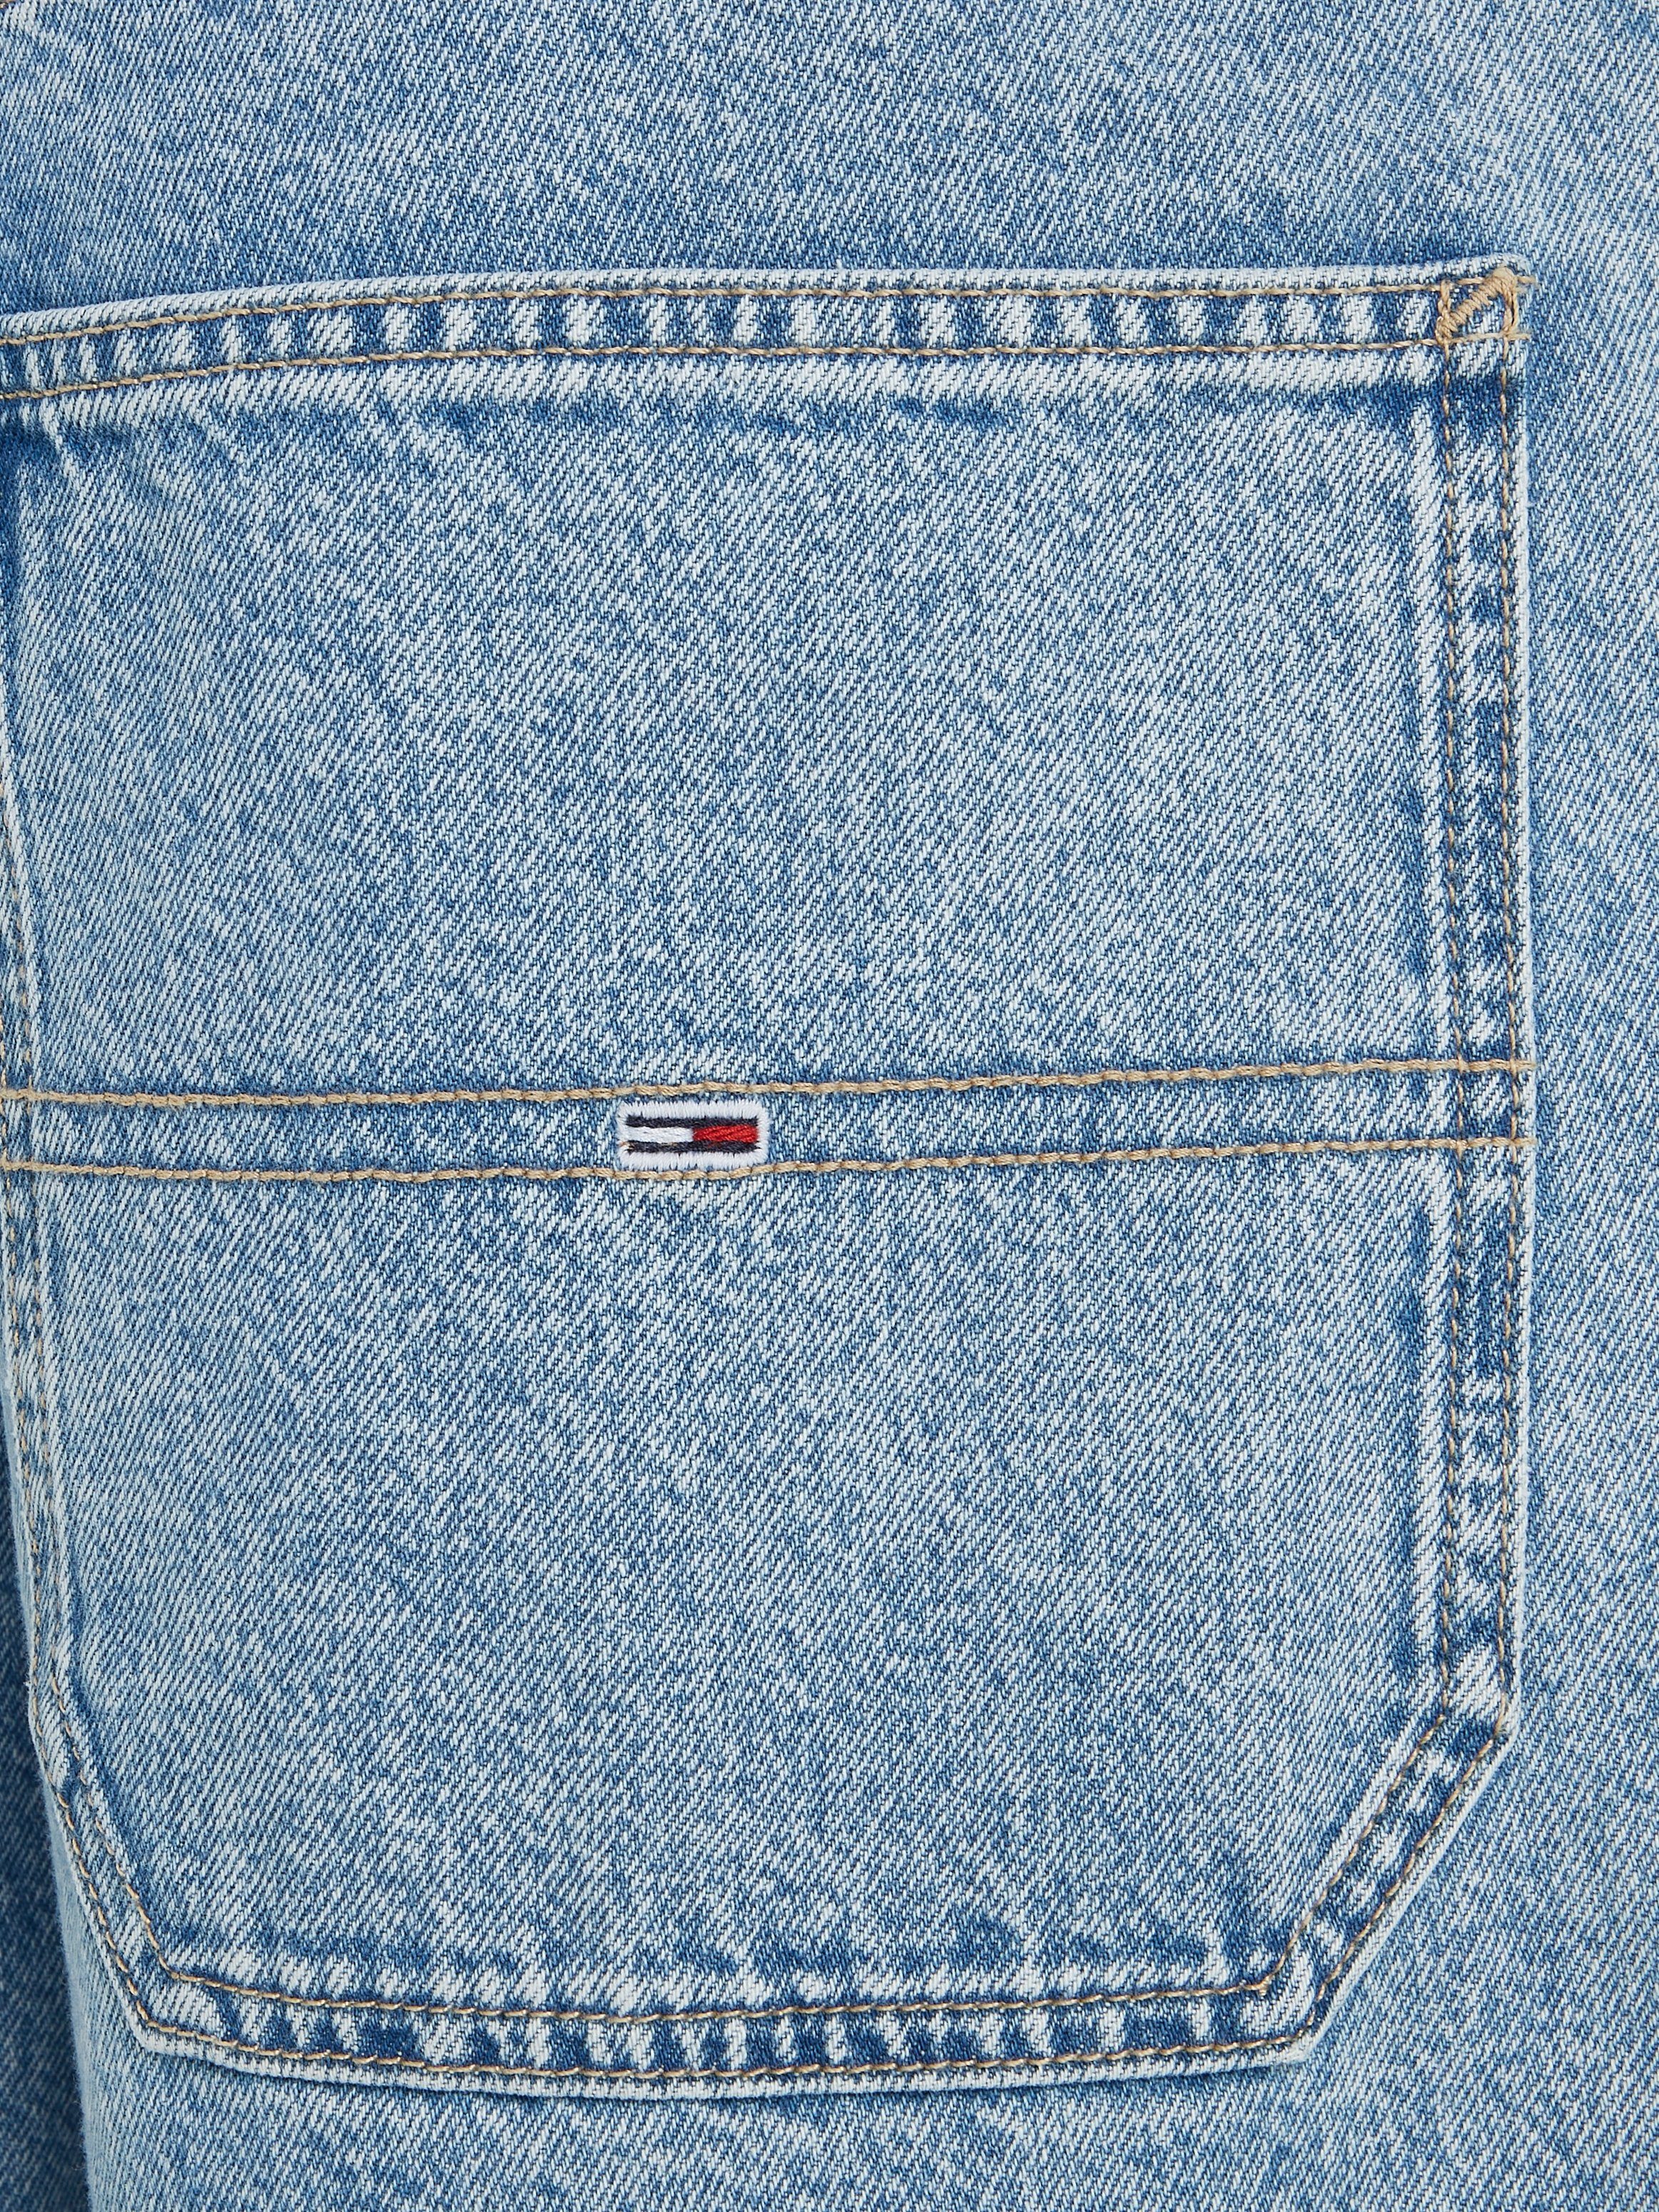 SKATER JEAN Jeans 5-Pocket-Jeans CG4014 Tommy